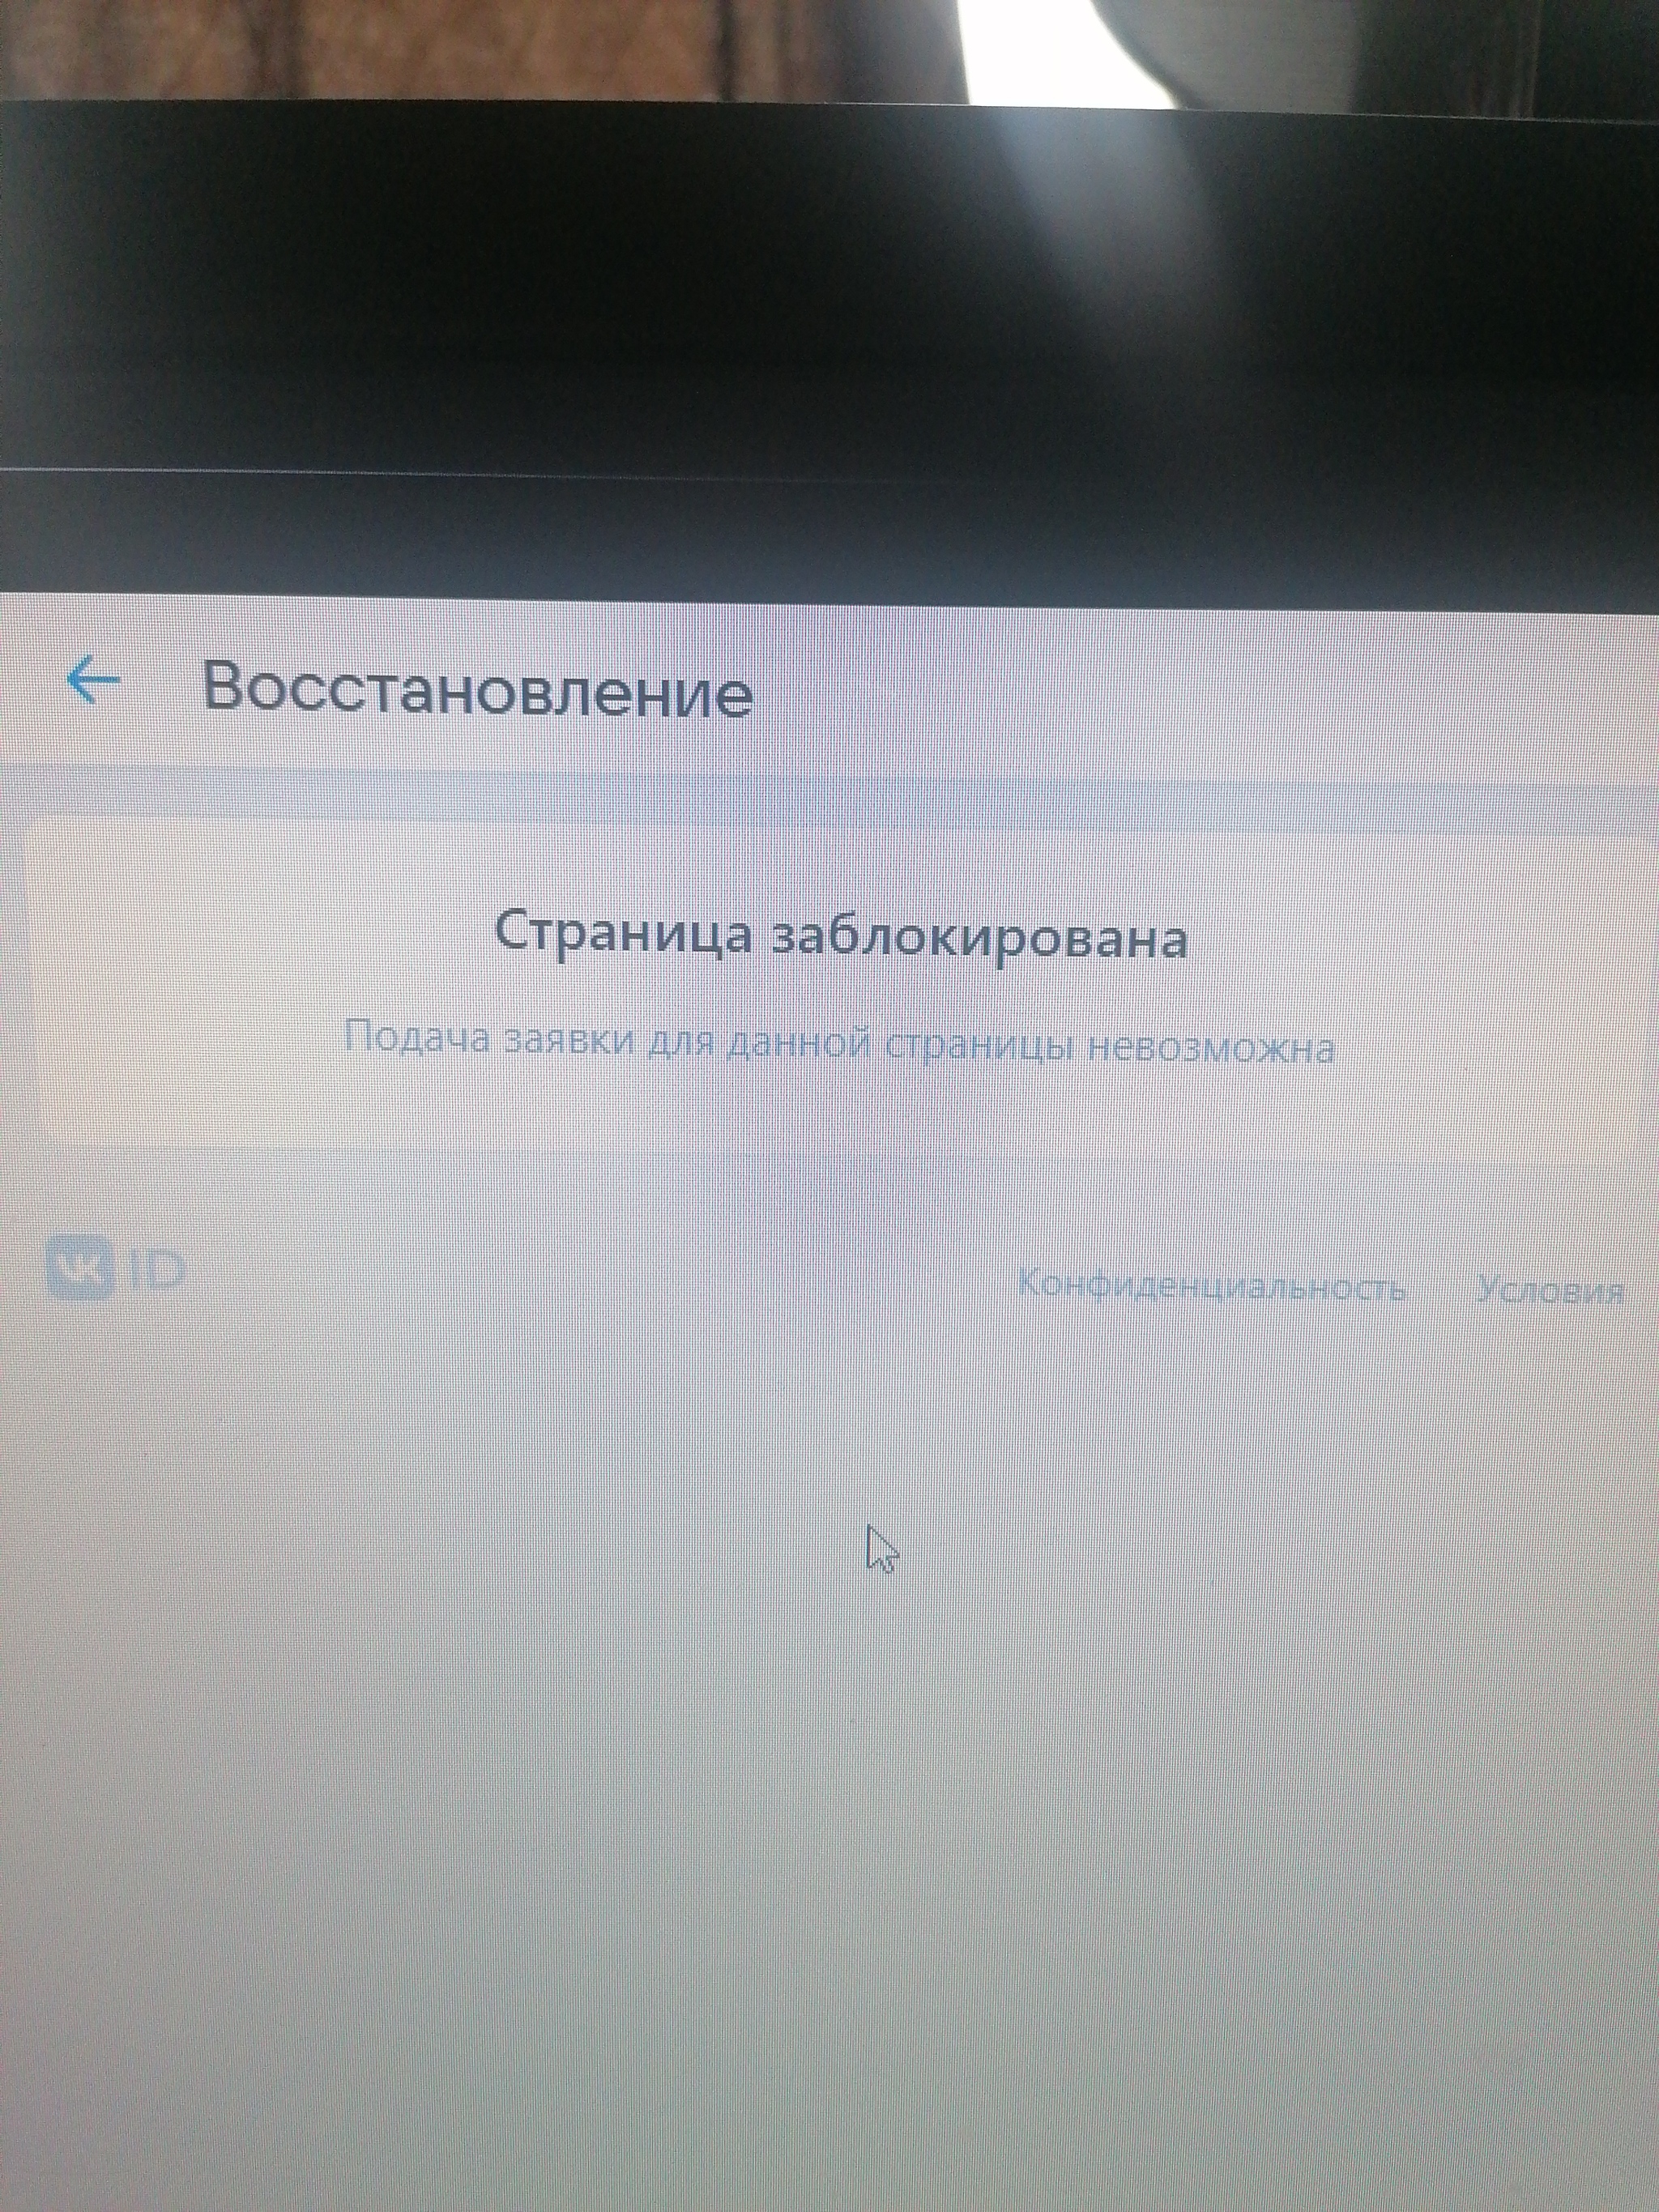 Как разблокировать (разморозить) страницу ВКонтакте, если нет номера телефона